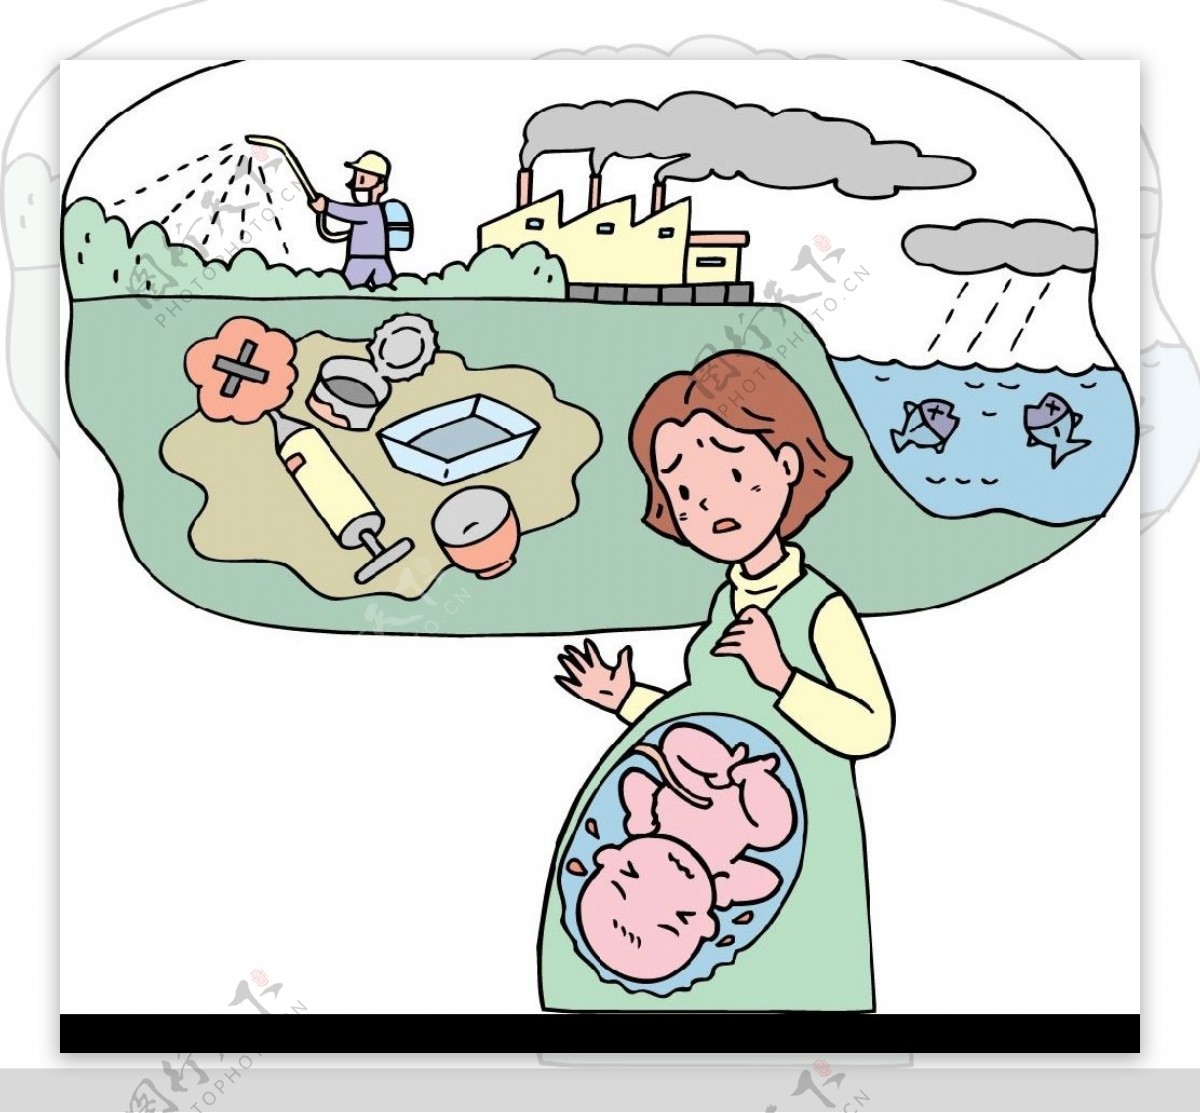 环境污染影响生育的漫画图片